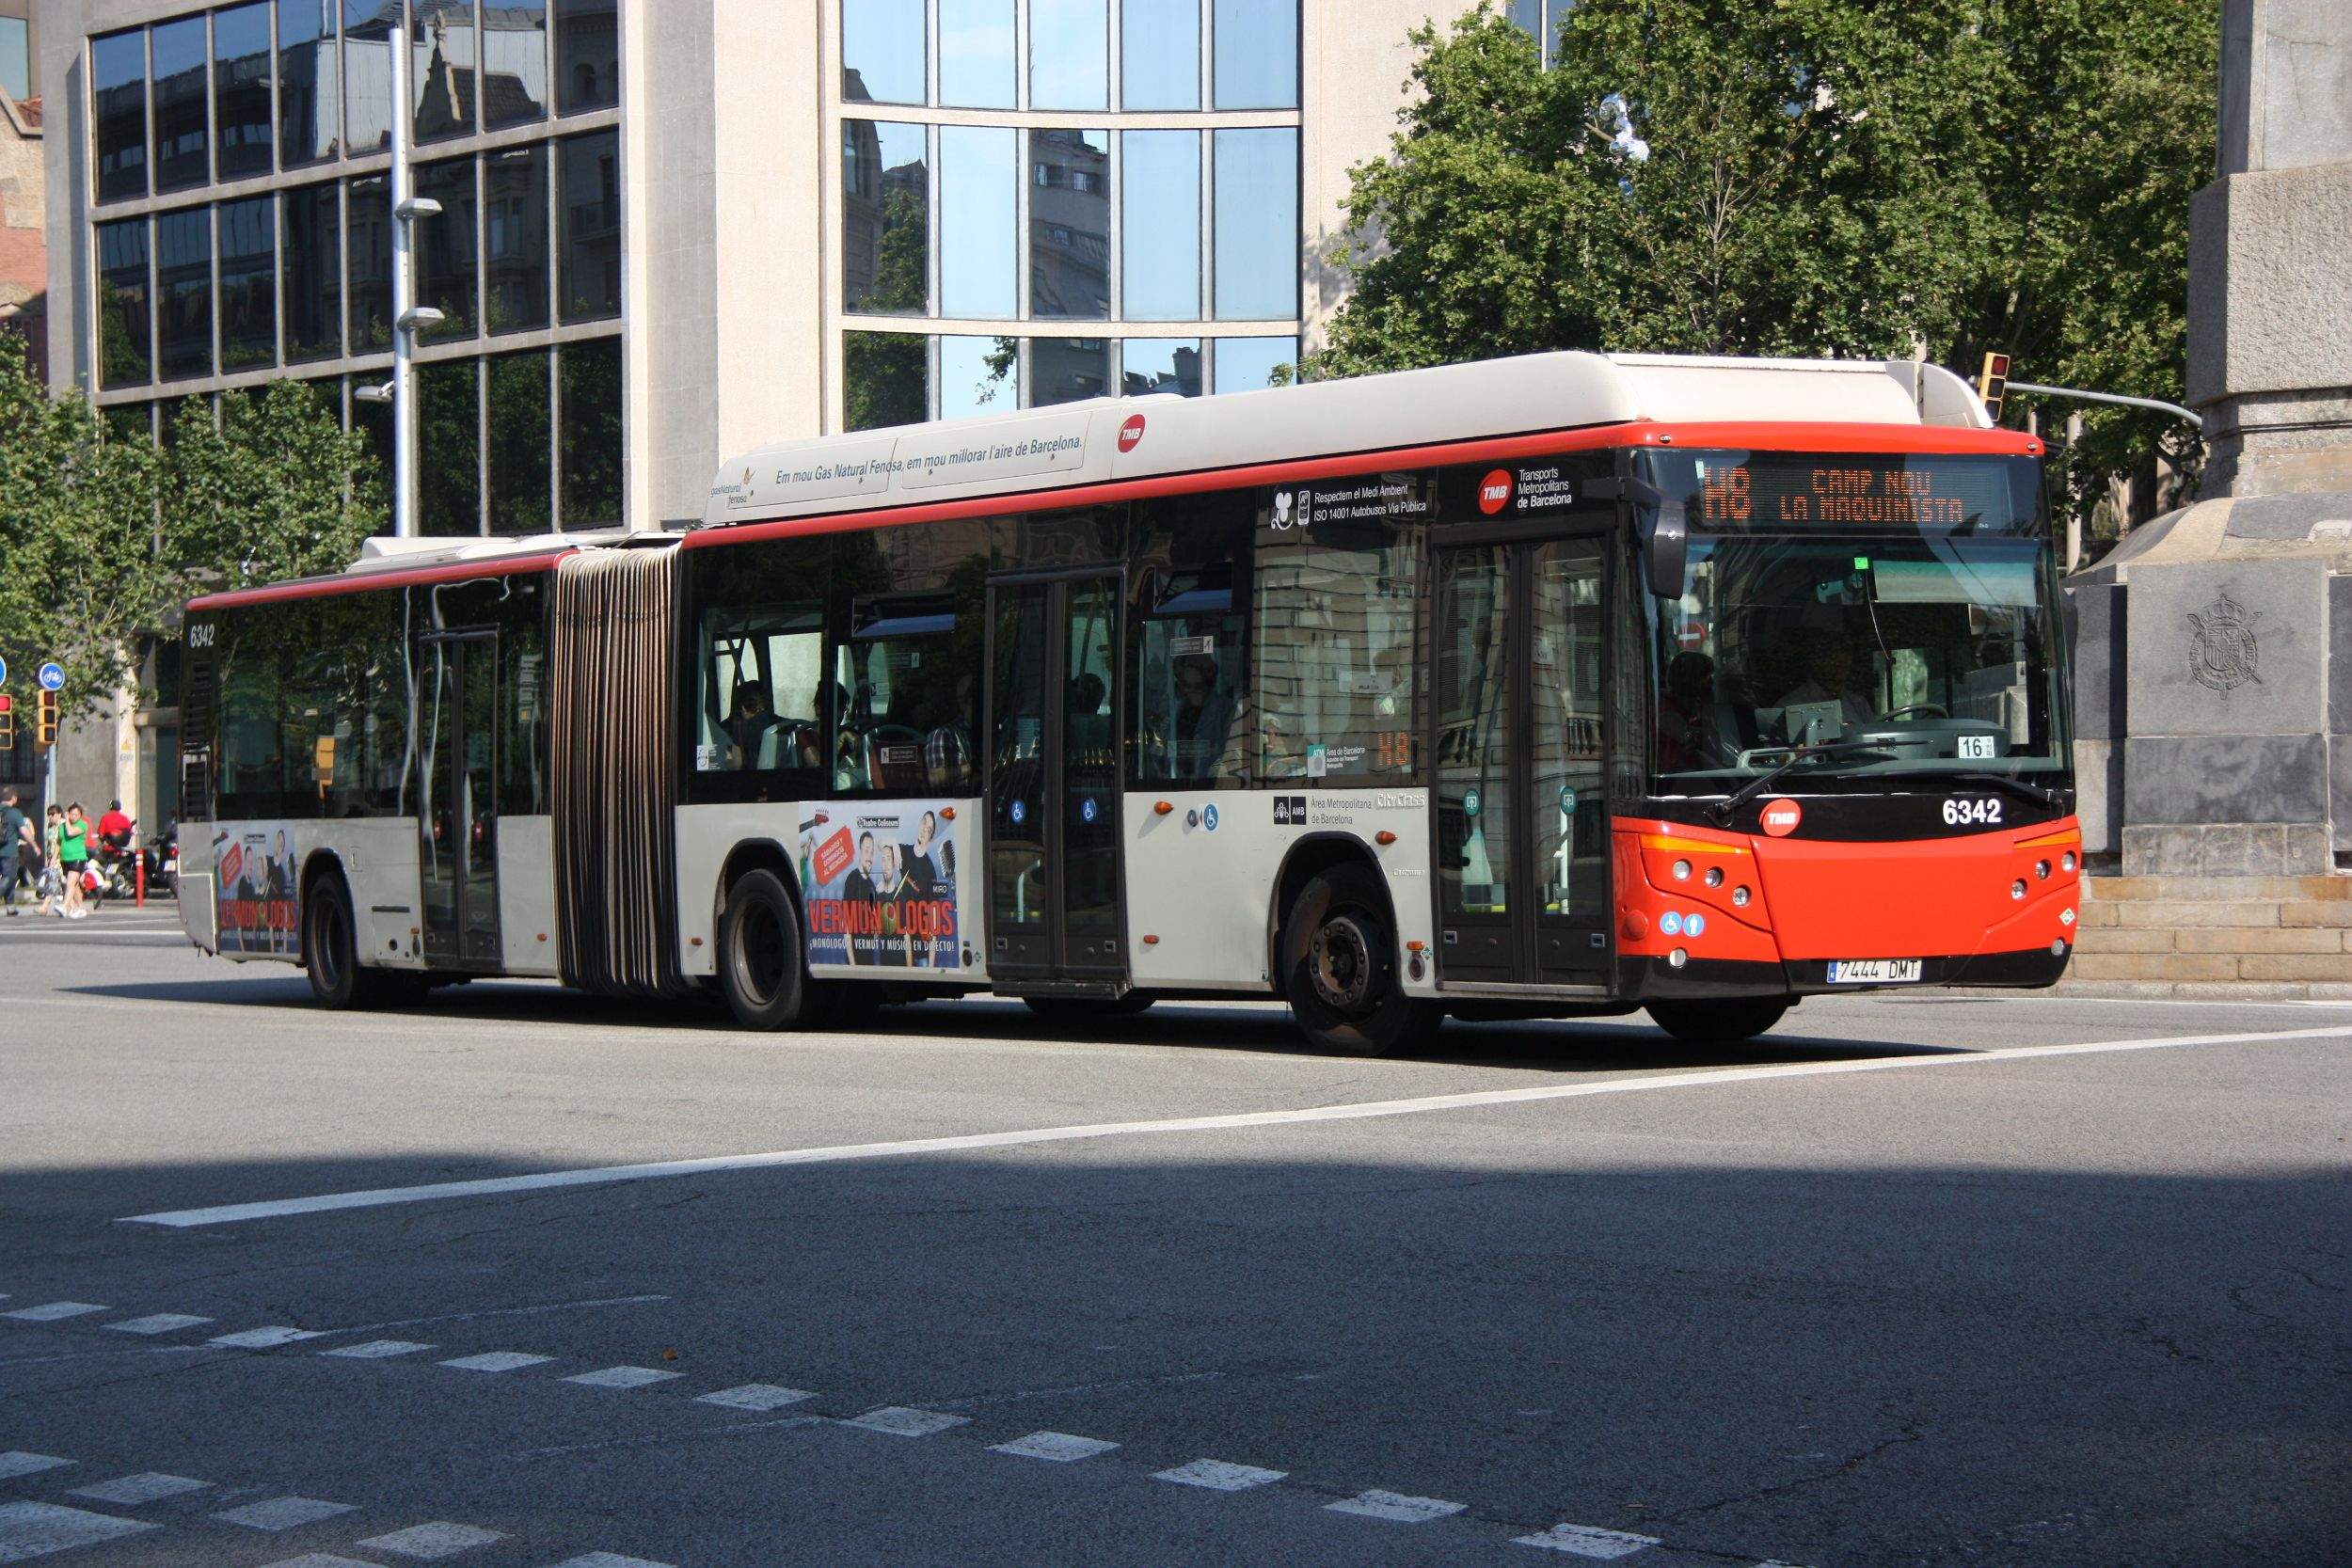 TMB instal·larà wifi a tots els autobusos durant el març